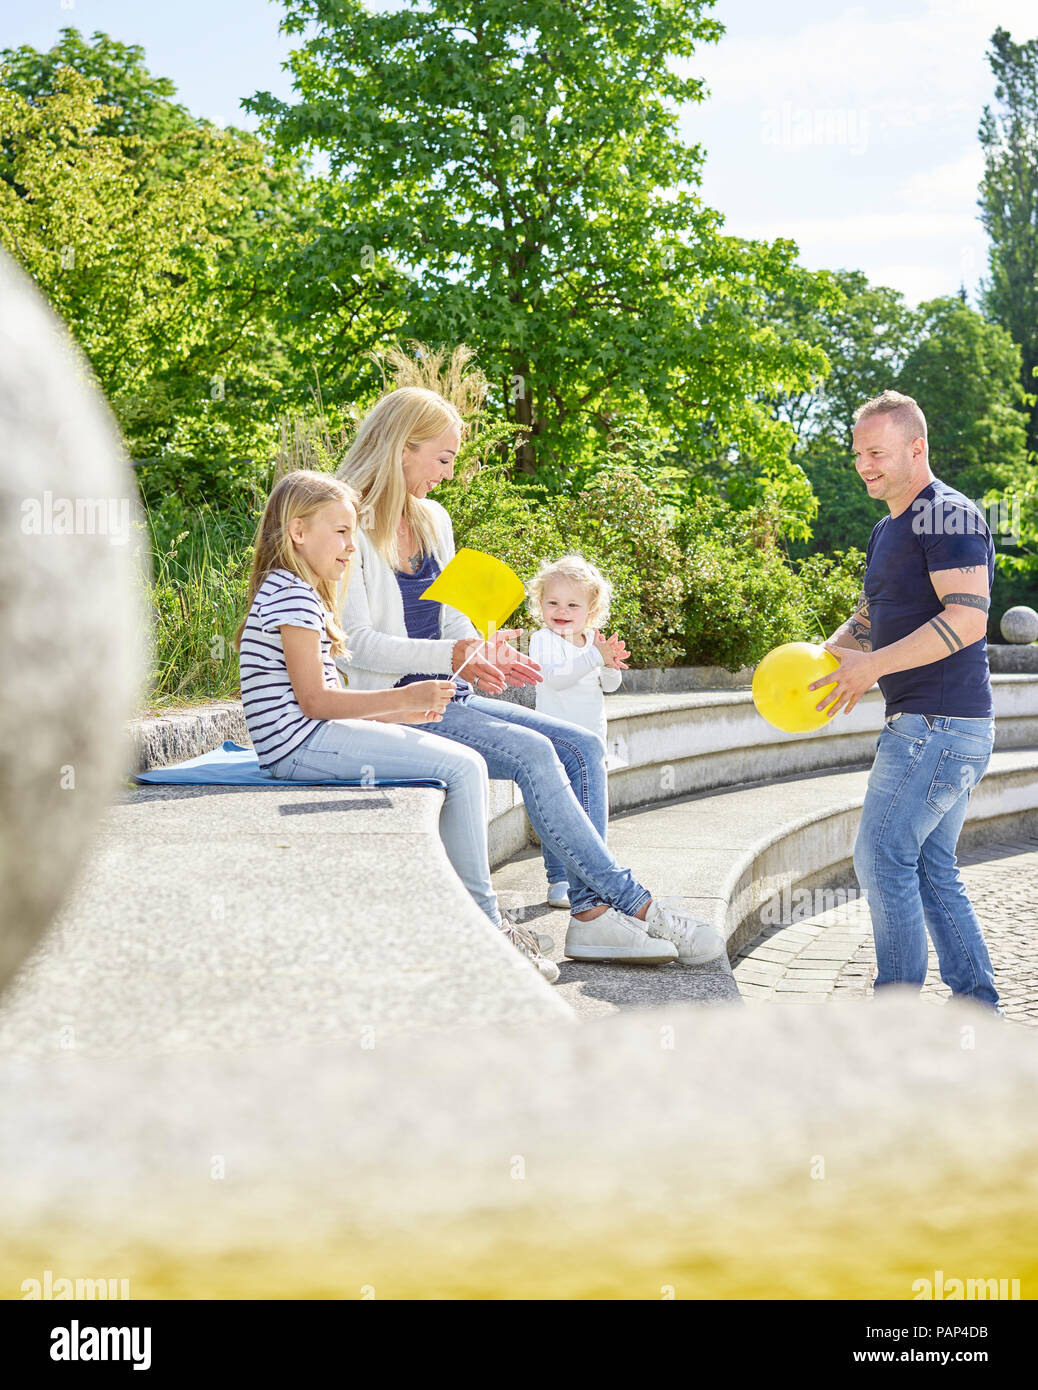 La famiglia felice giocando insieme in un parco Foto Stock